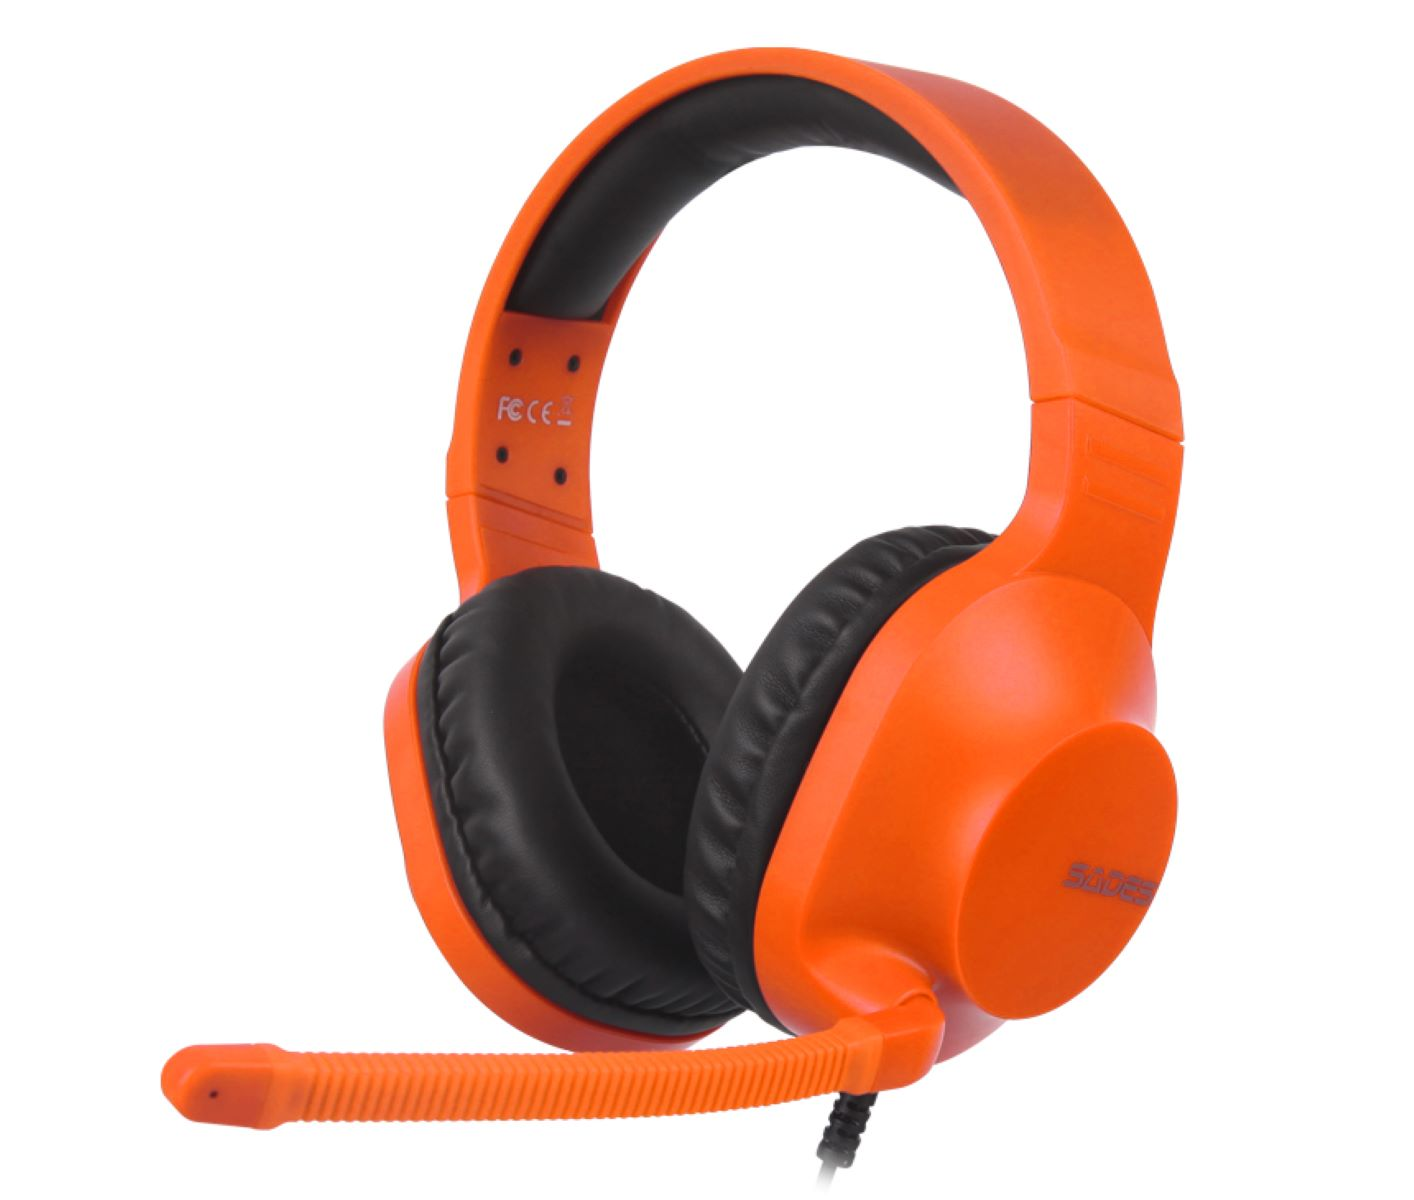 SADES Spirits SA-721, orange Gaming Headset Over-ear